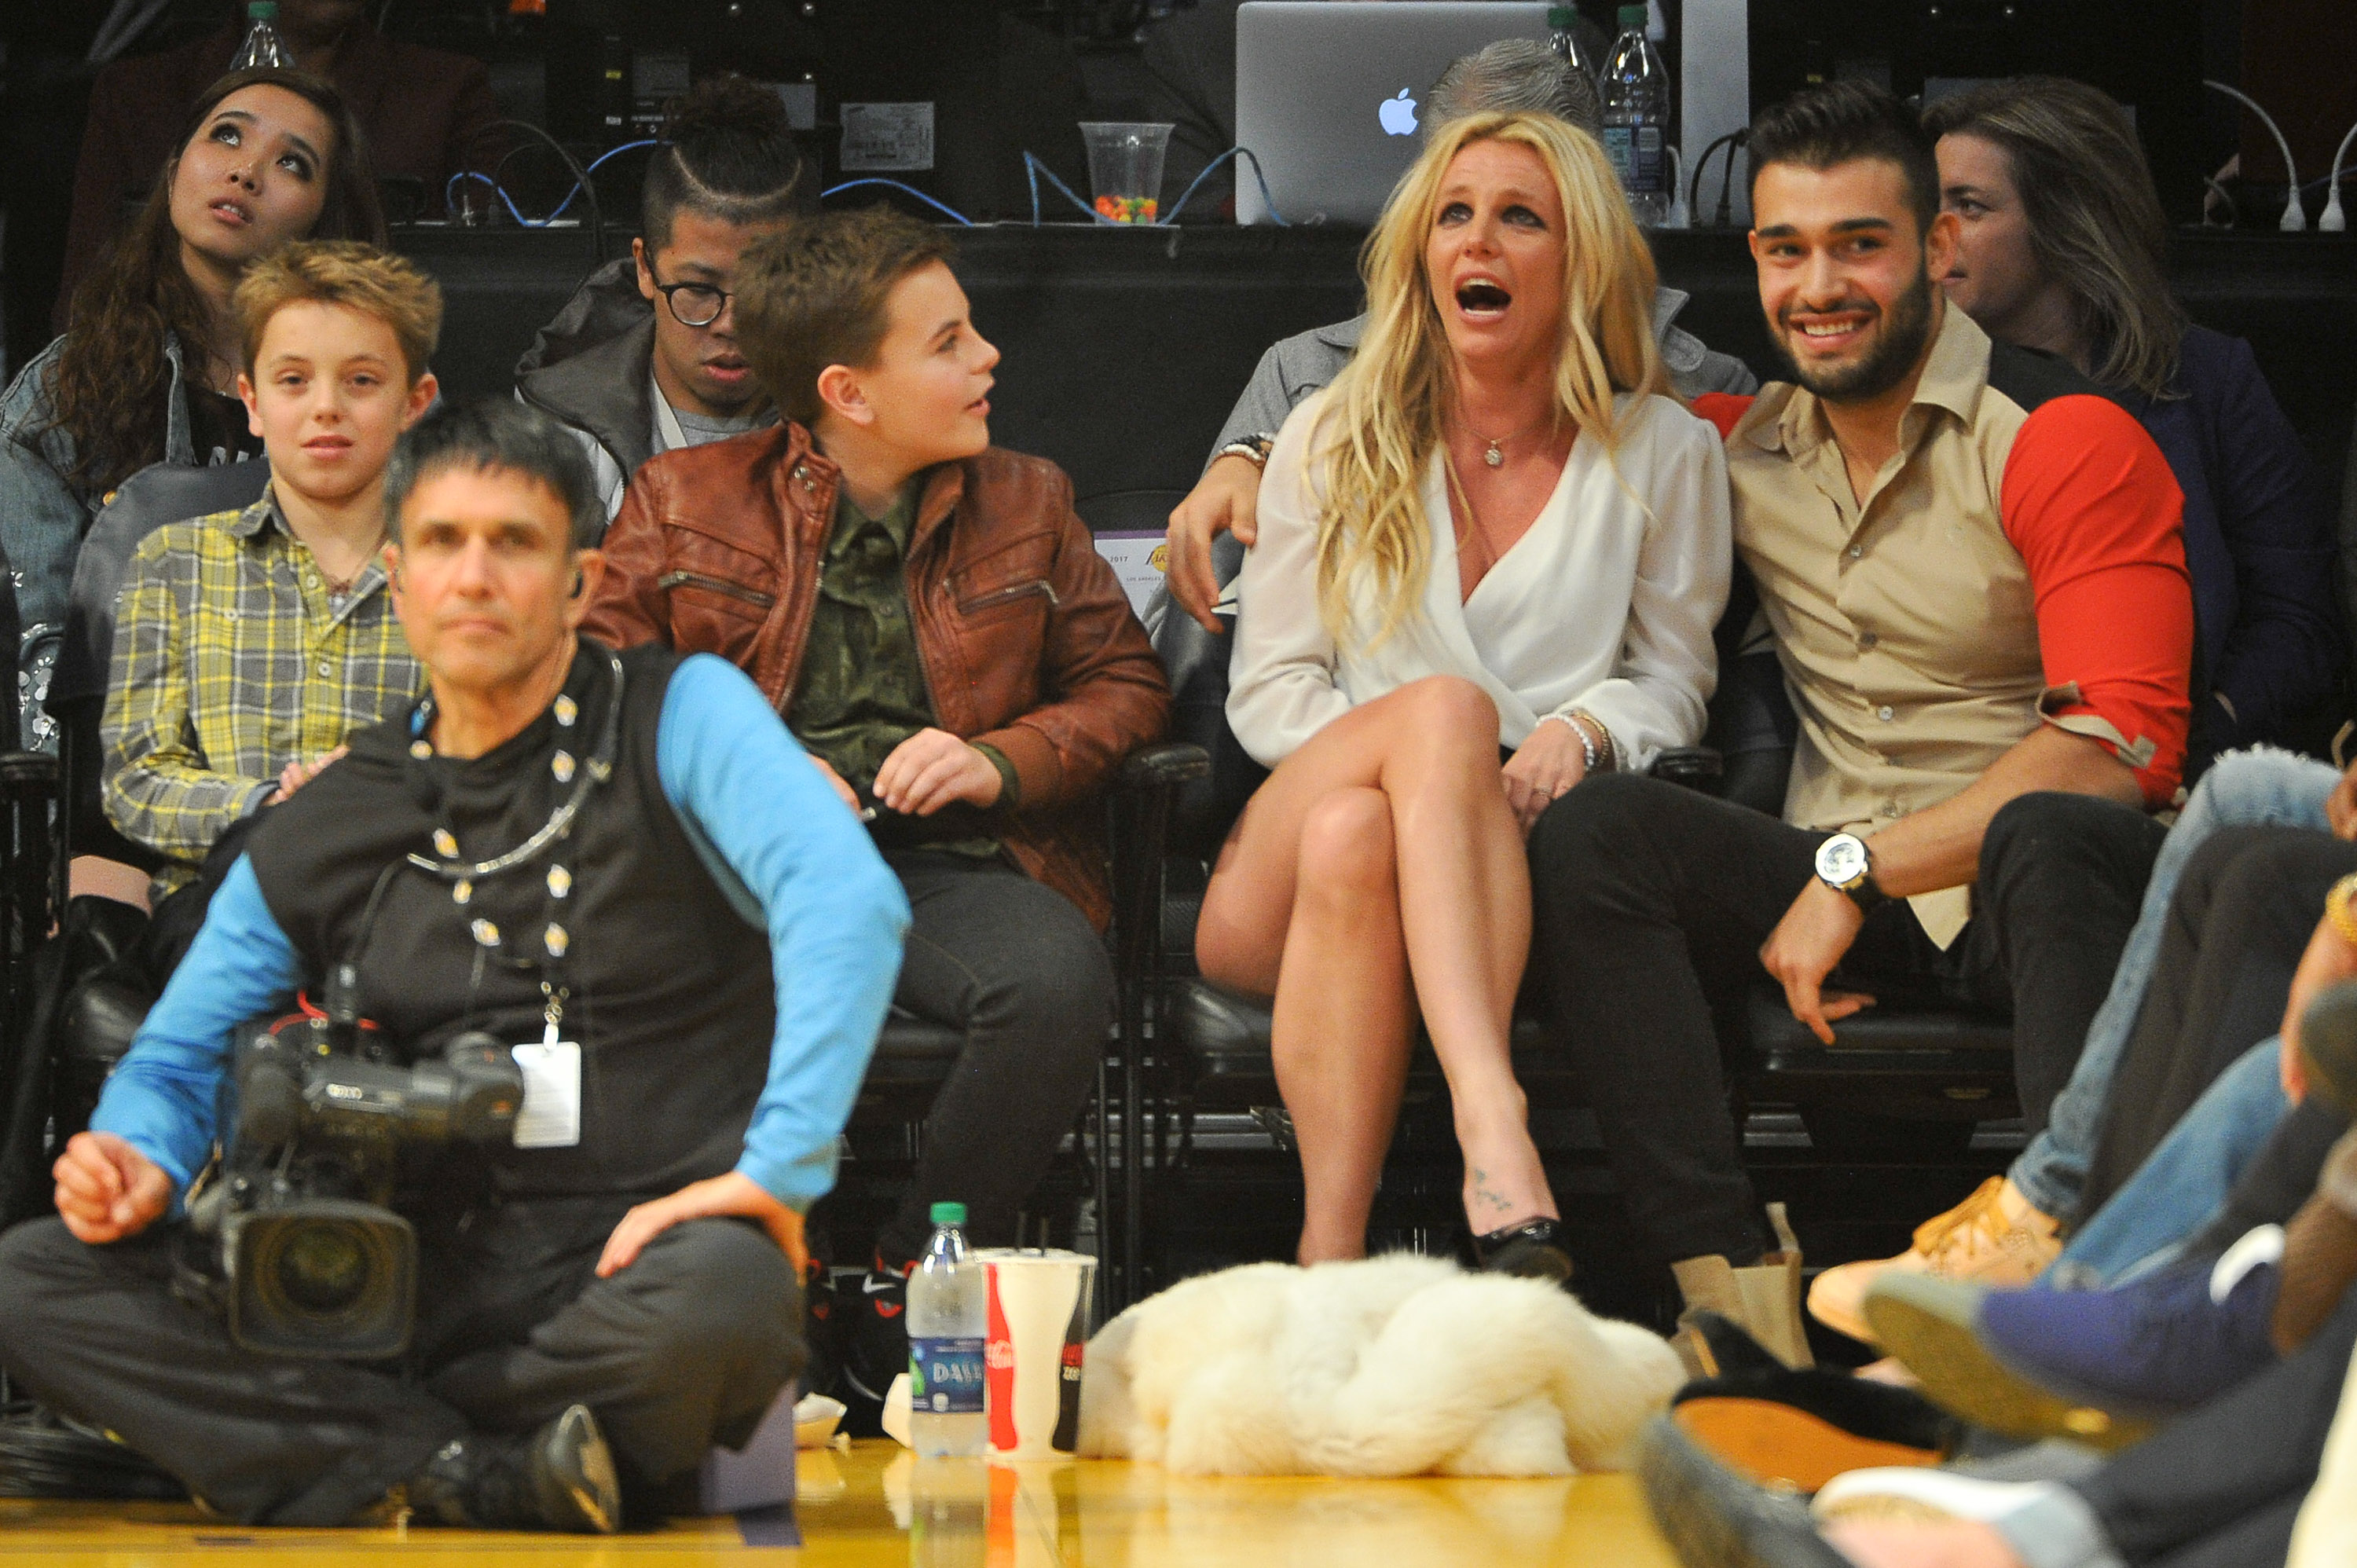 Sean Federline, Jayden James Federline, Britney Spears and Sam Asghari on November 29, 2017 in Los Angeles, California. | Source: Getty Images